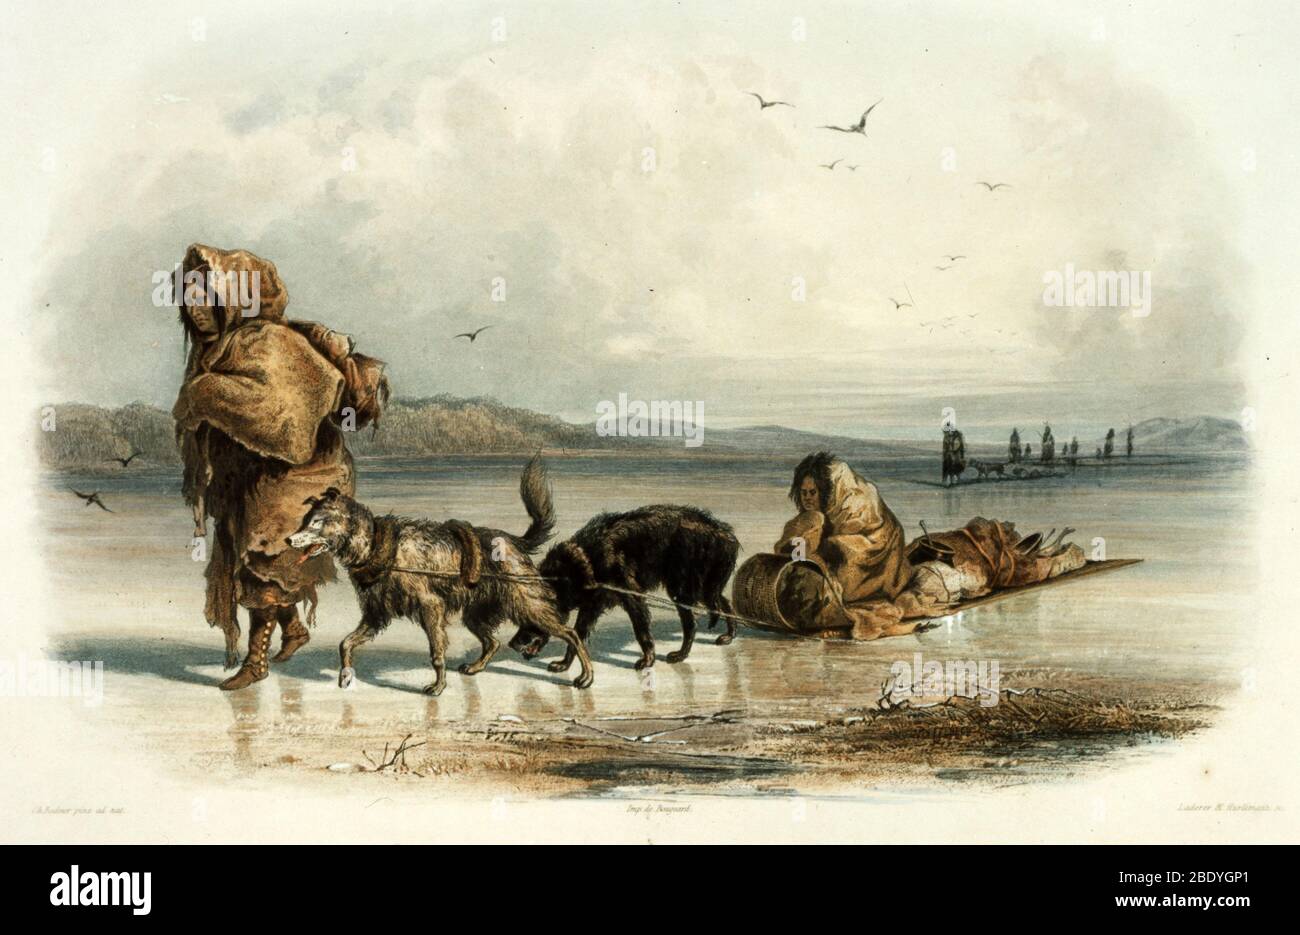 Mandan Indians with Dog Sledge, c.1840 Stock Photo